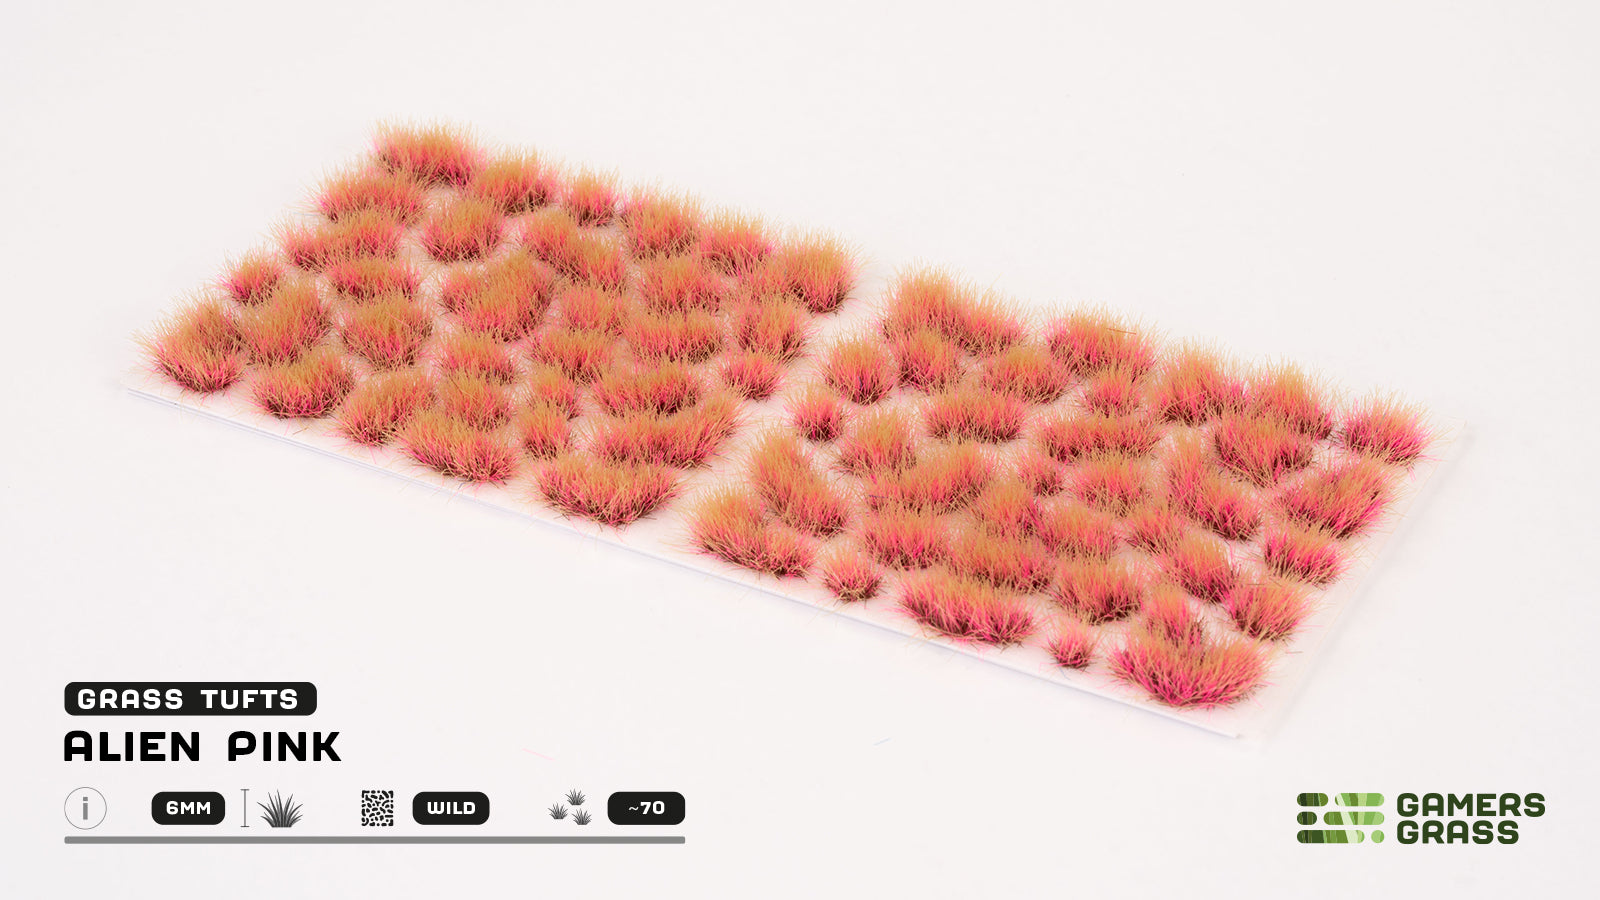 GamersGrass Grass Tufts: Alien Pink 6mm - Wild | Gauntlet Hobbies - Angola